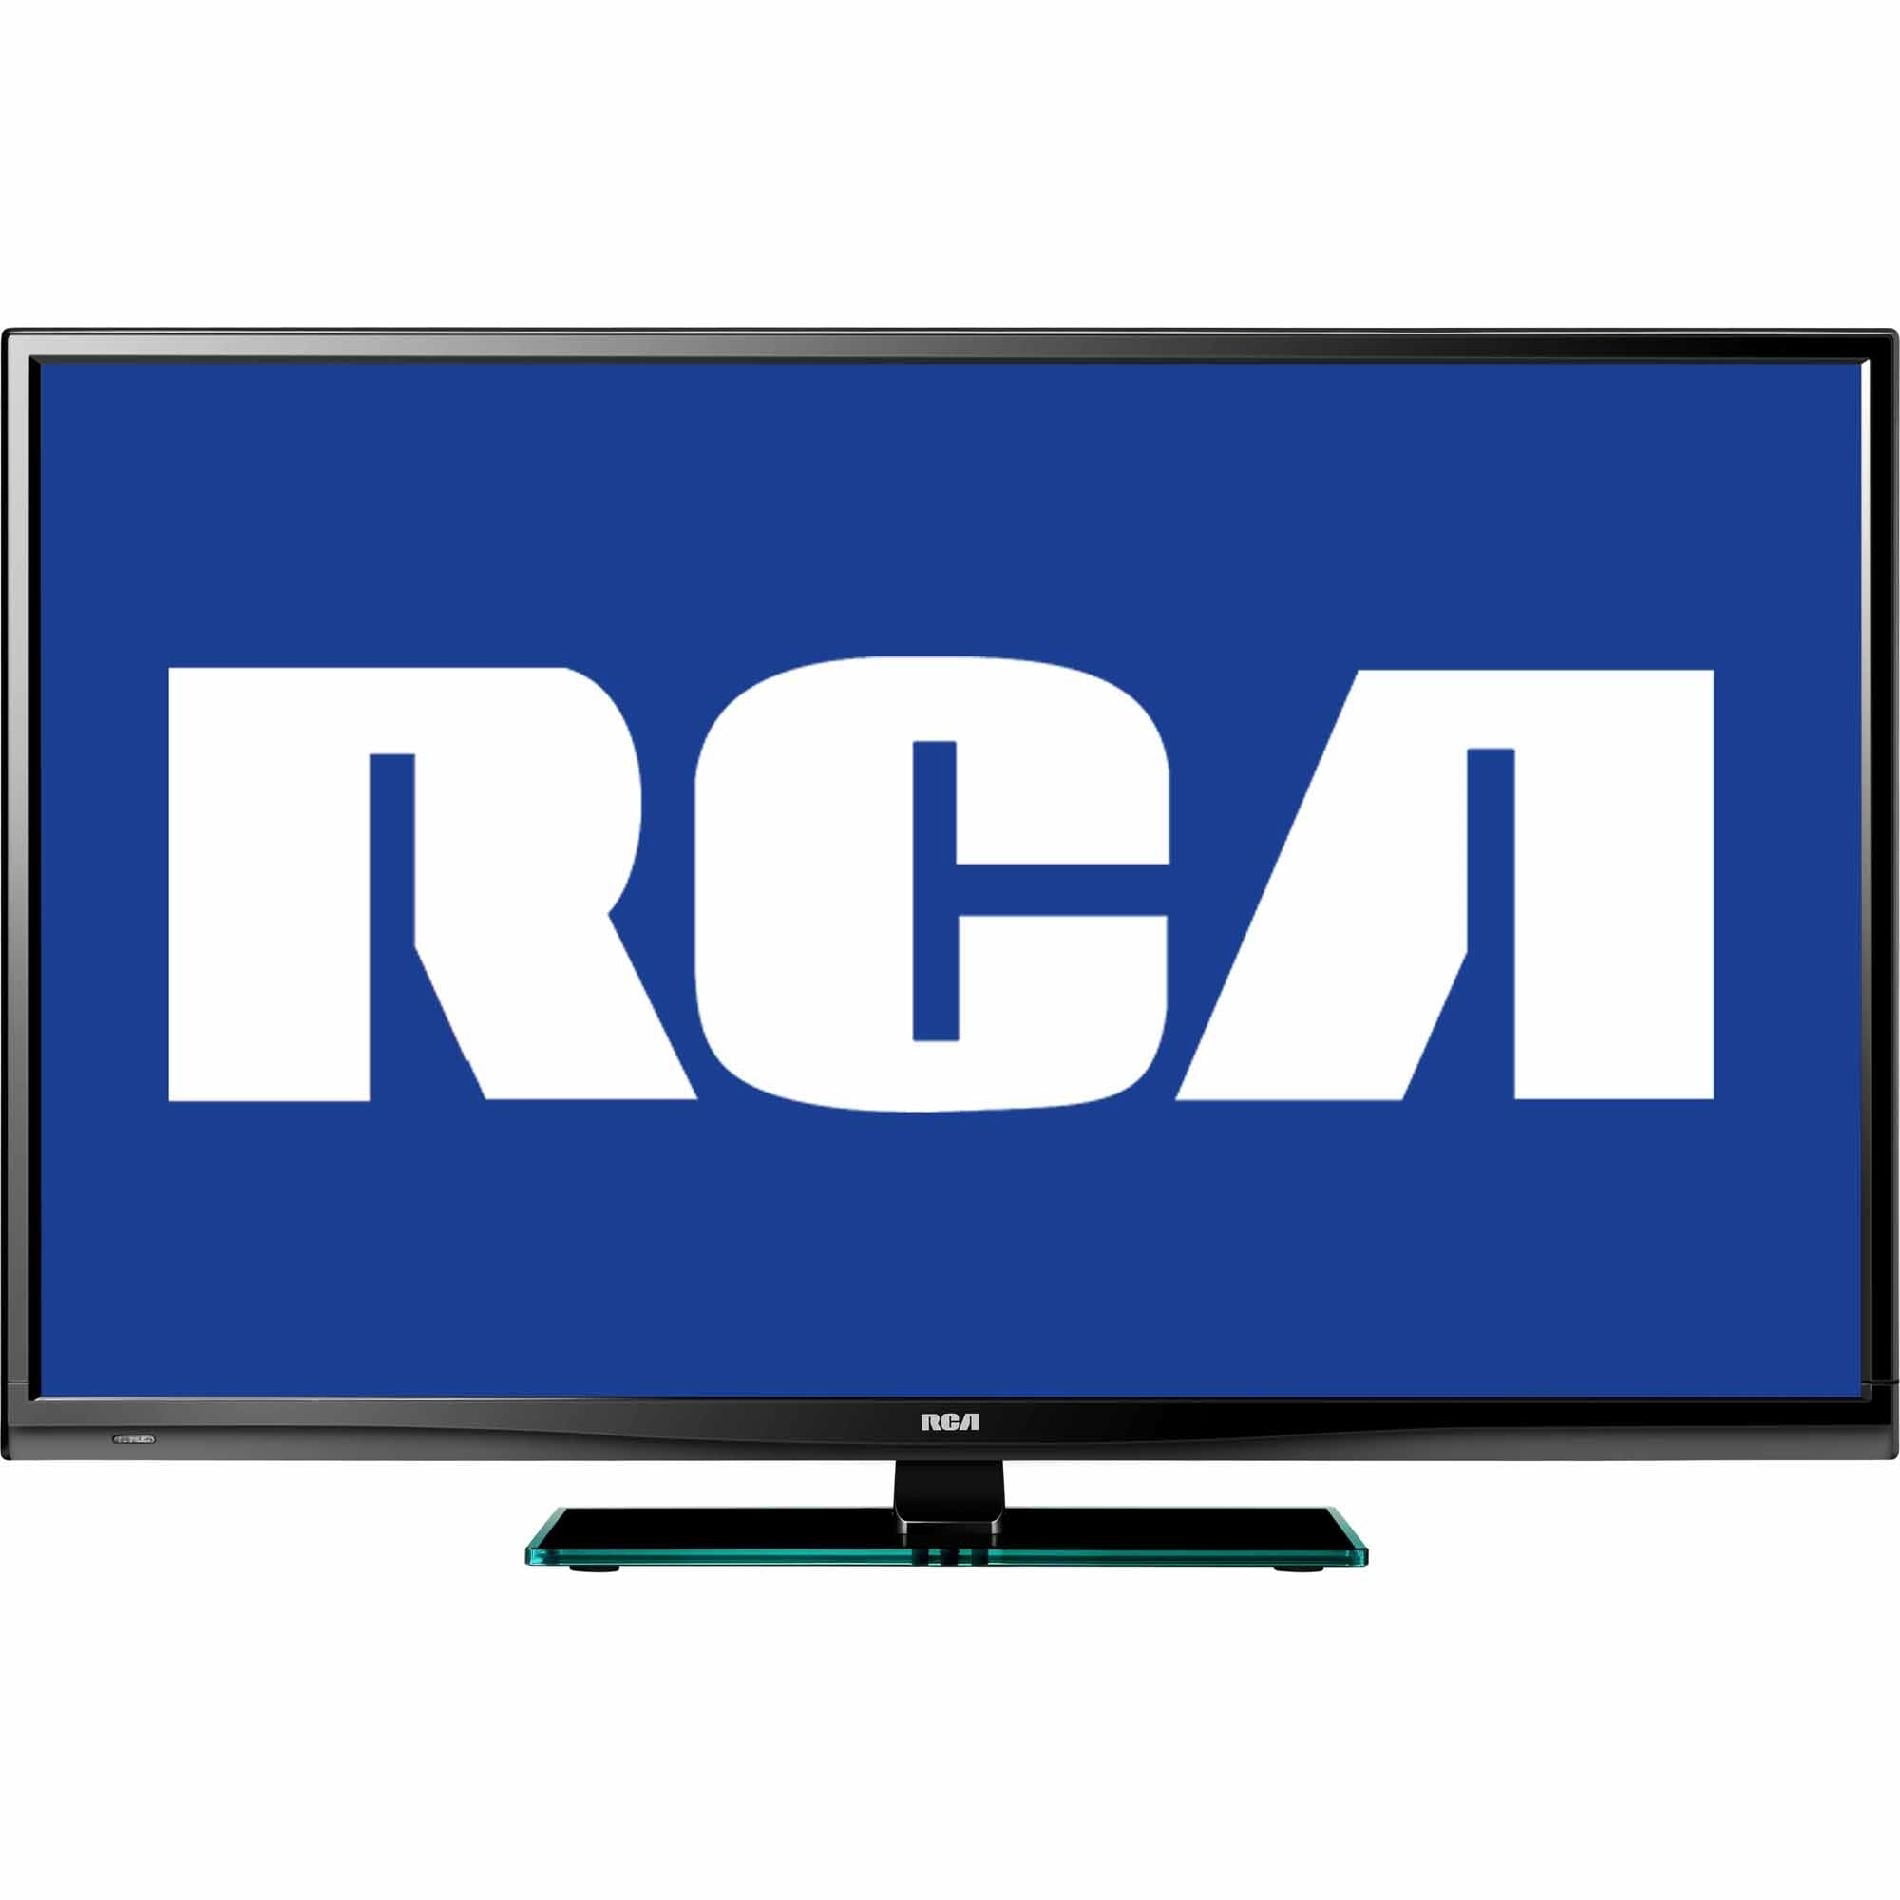 Smart Tv UHD 4K RCA 40 RC40RK, Wi-Fi